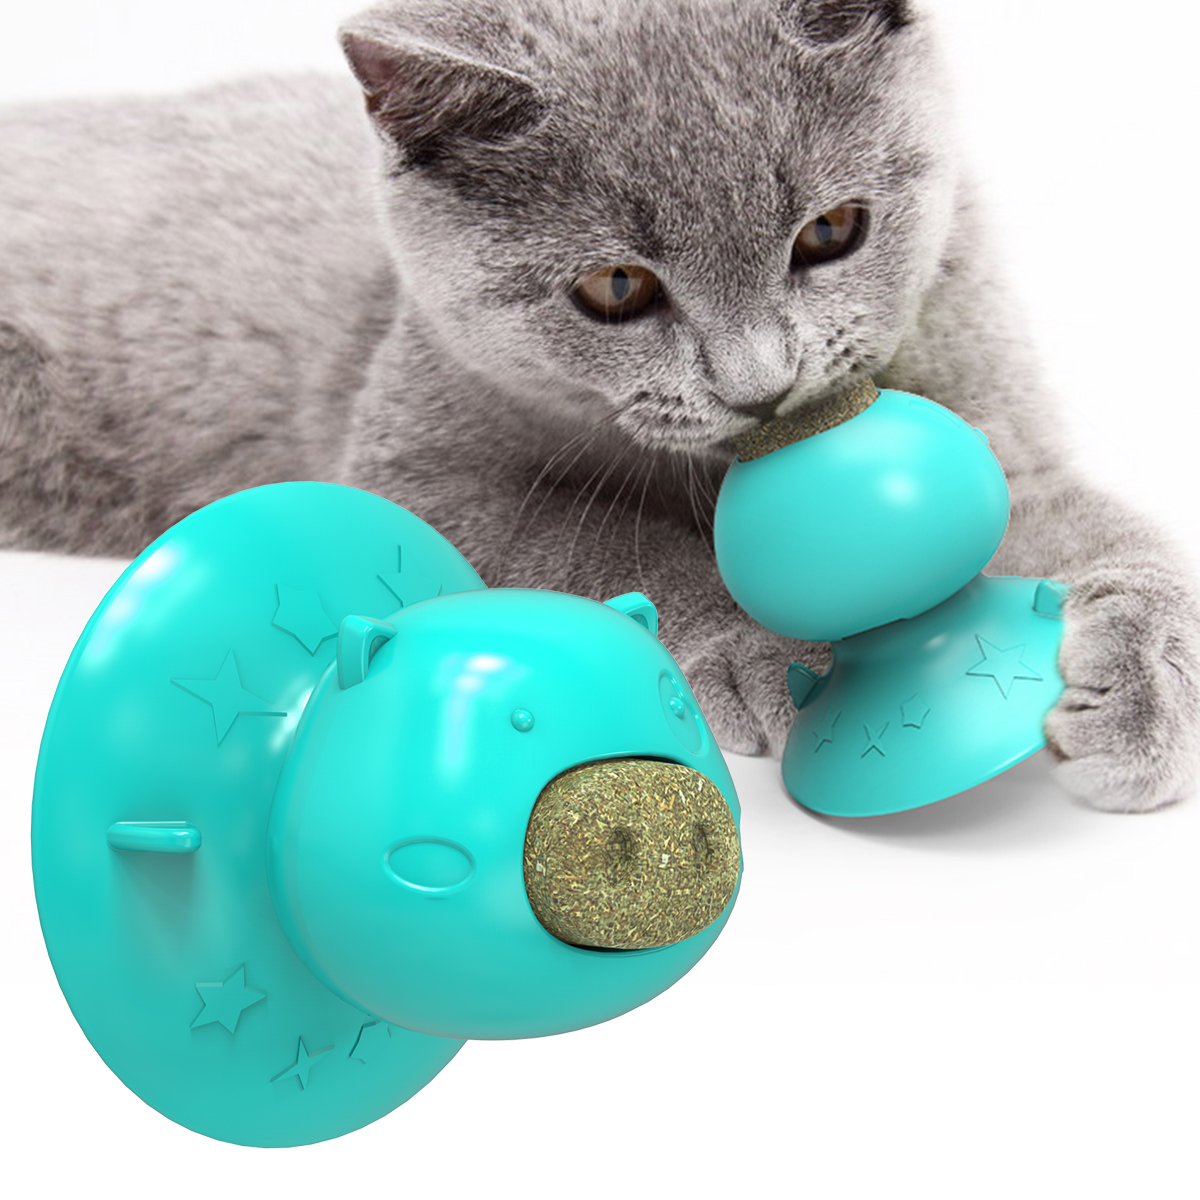 Մեծածախ էկոլոգիապես մաքուր նյութեր կատու ծամող ատամ խաղալիք ծծող կատվախոտ լիզող խաղալիք